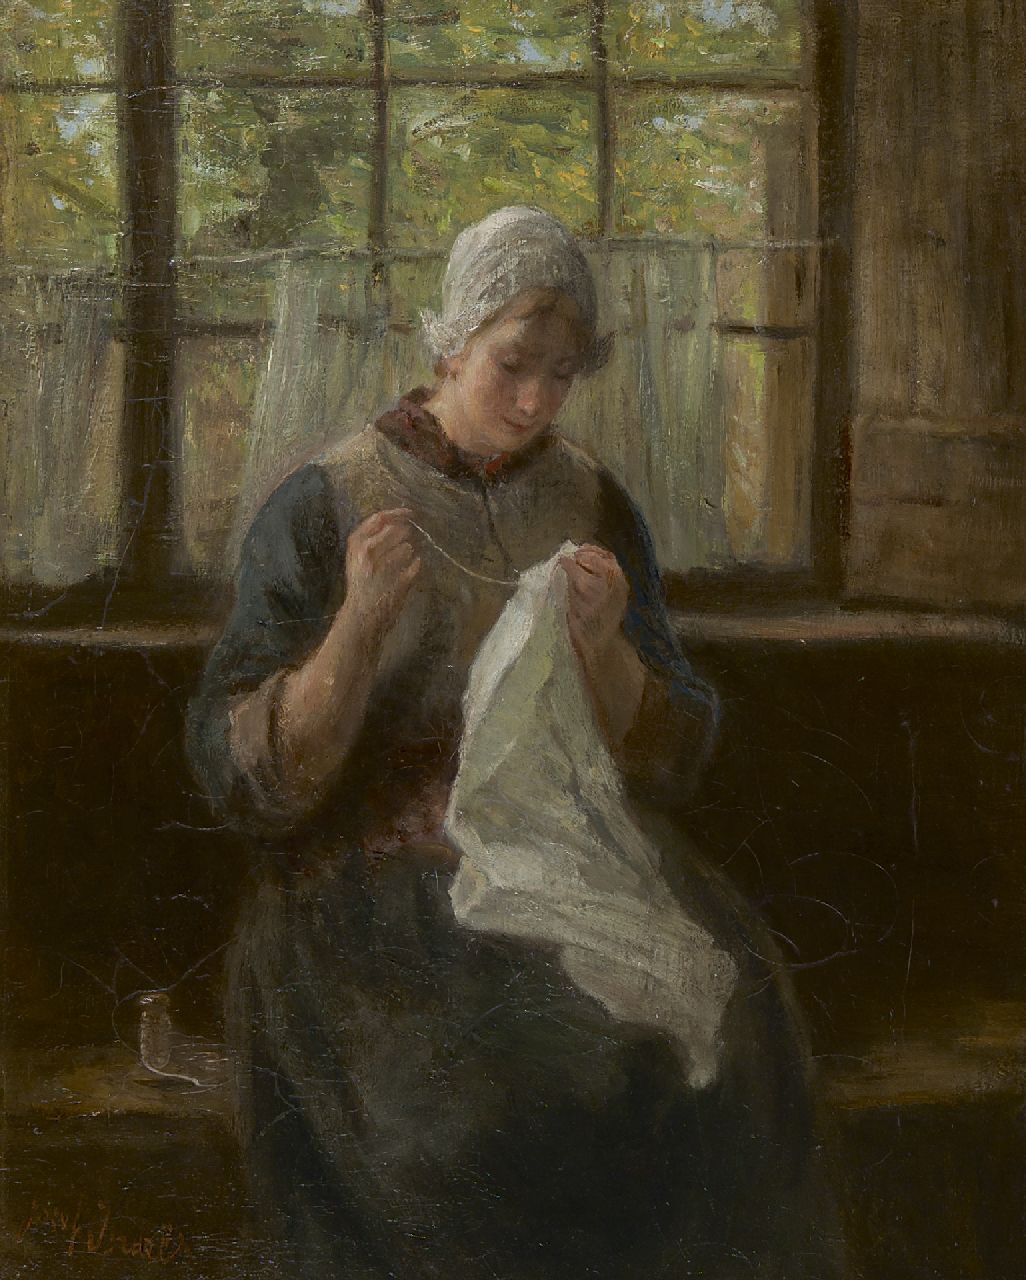 Israëls J.  | Jozef Israëls, A woman knitting, oil on canvas 56.6 x 45.3 cm, signed l.l.